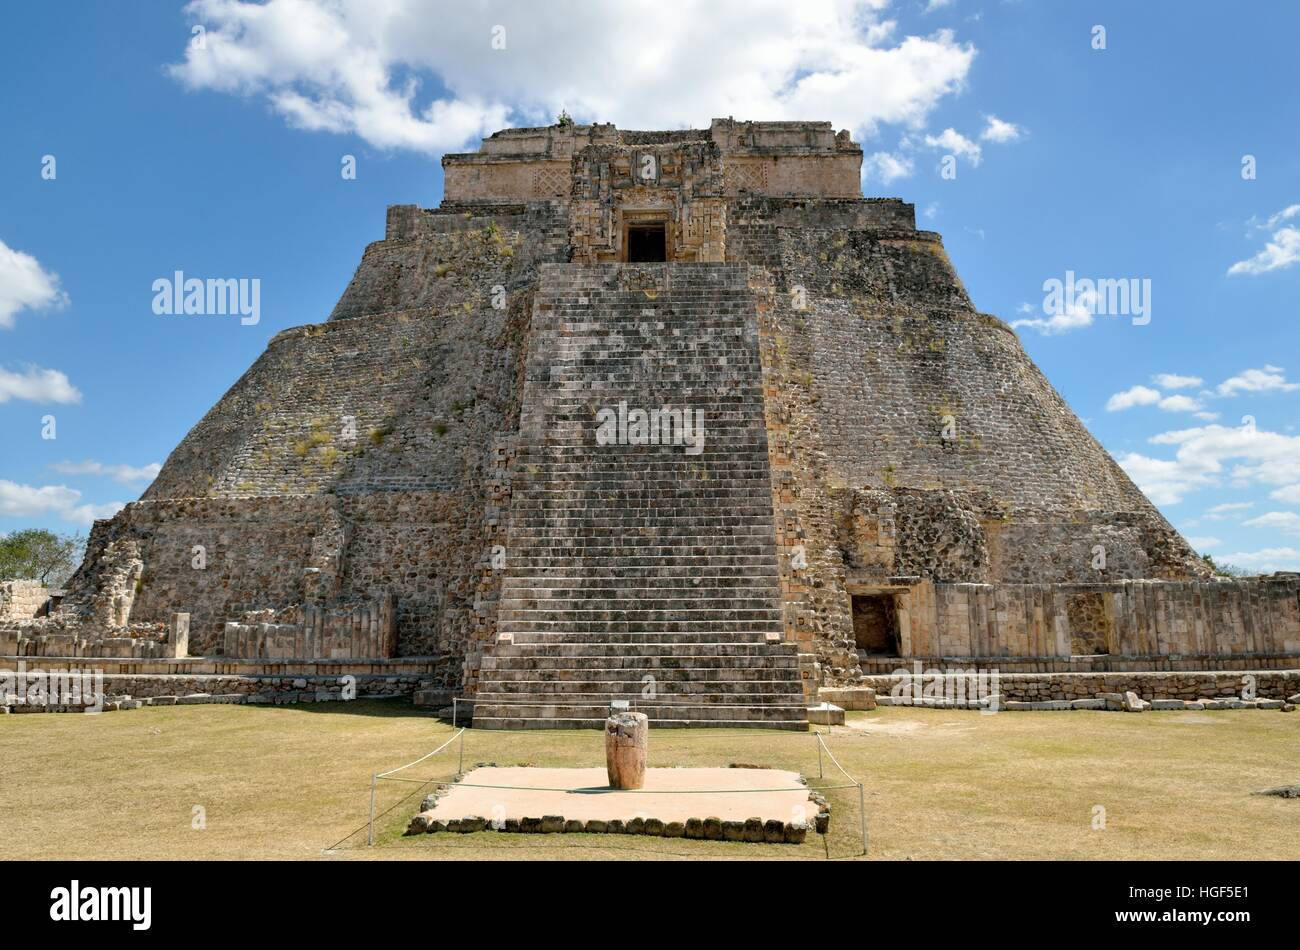 La Pirámide del Adivino, la Pirámide del Mago, antigua ciudad maya de Uxmal, Yucatán, México Foto de stock